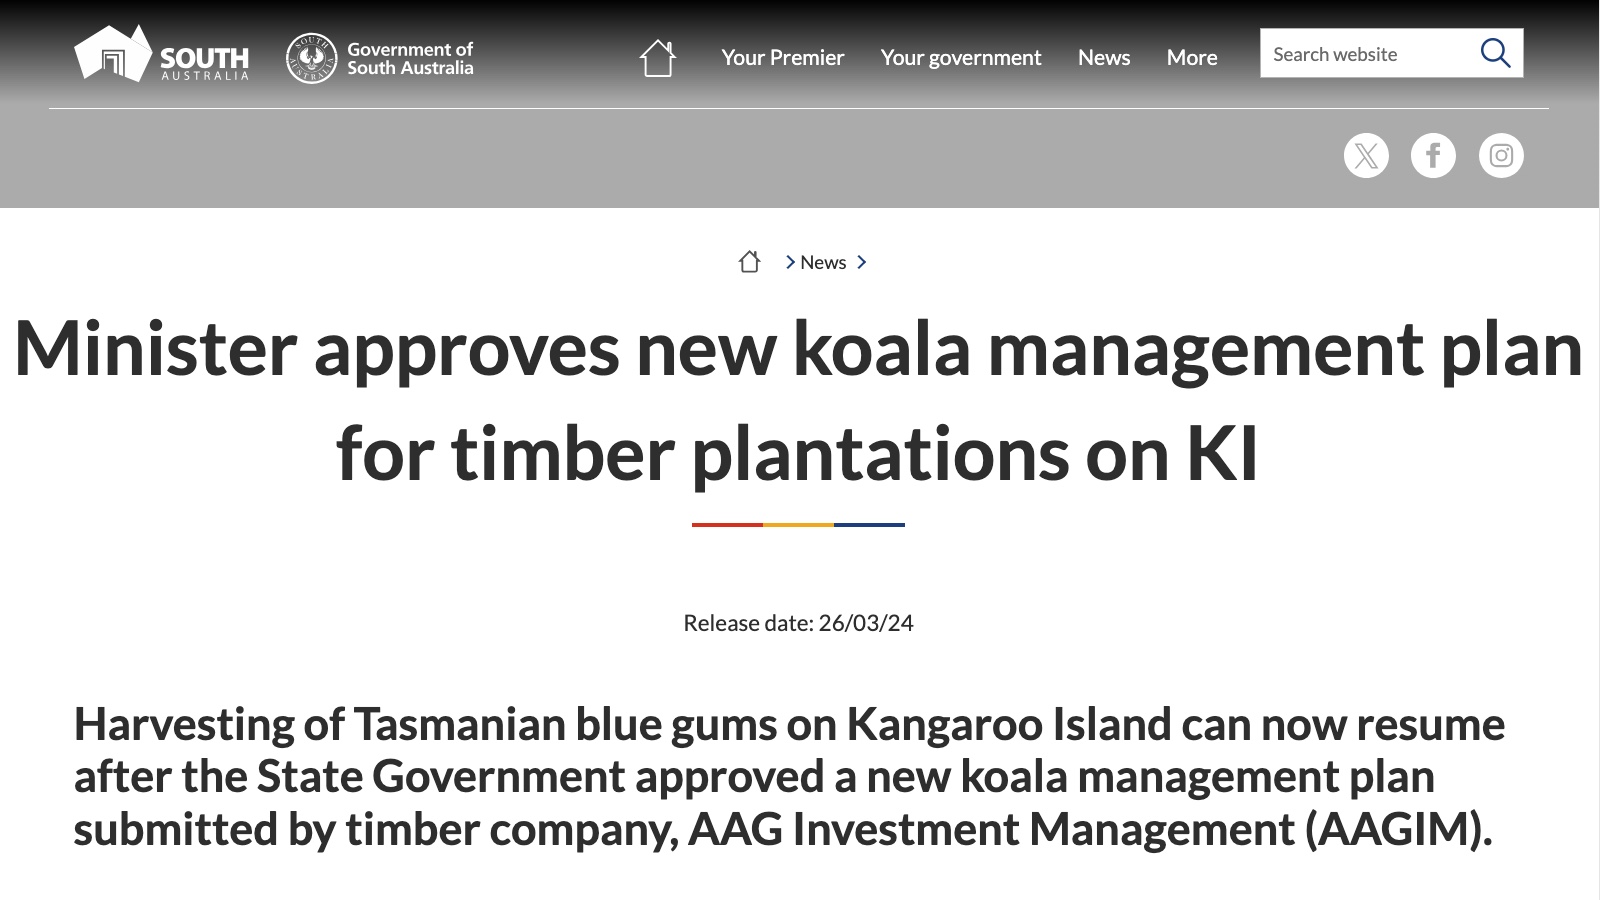 Minister approves new koala management plan for timber plantations on KI